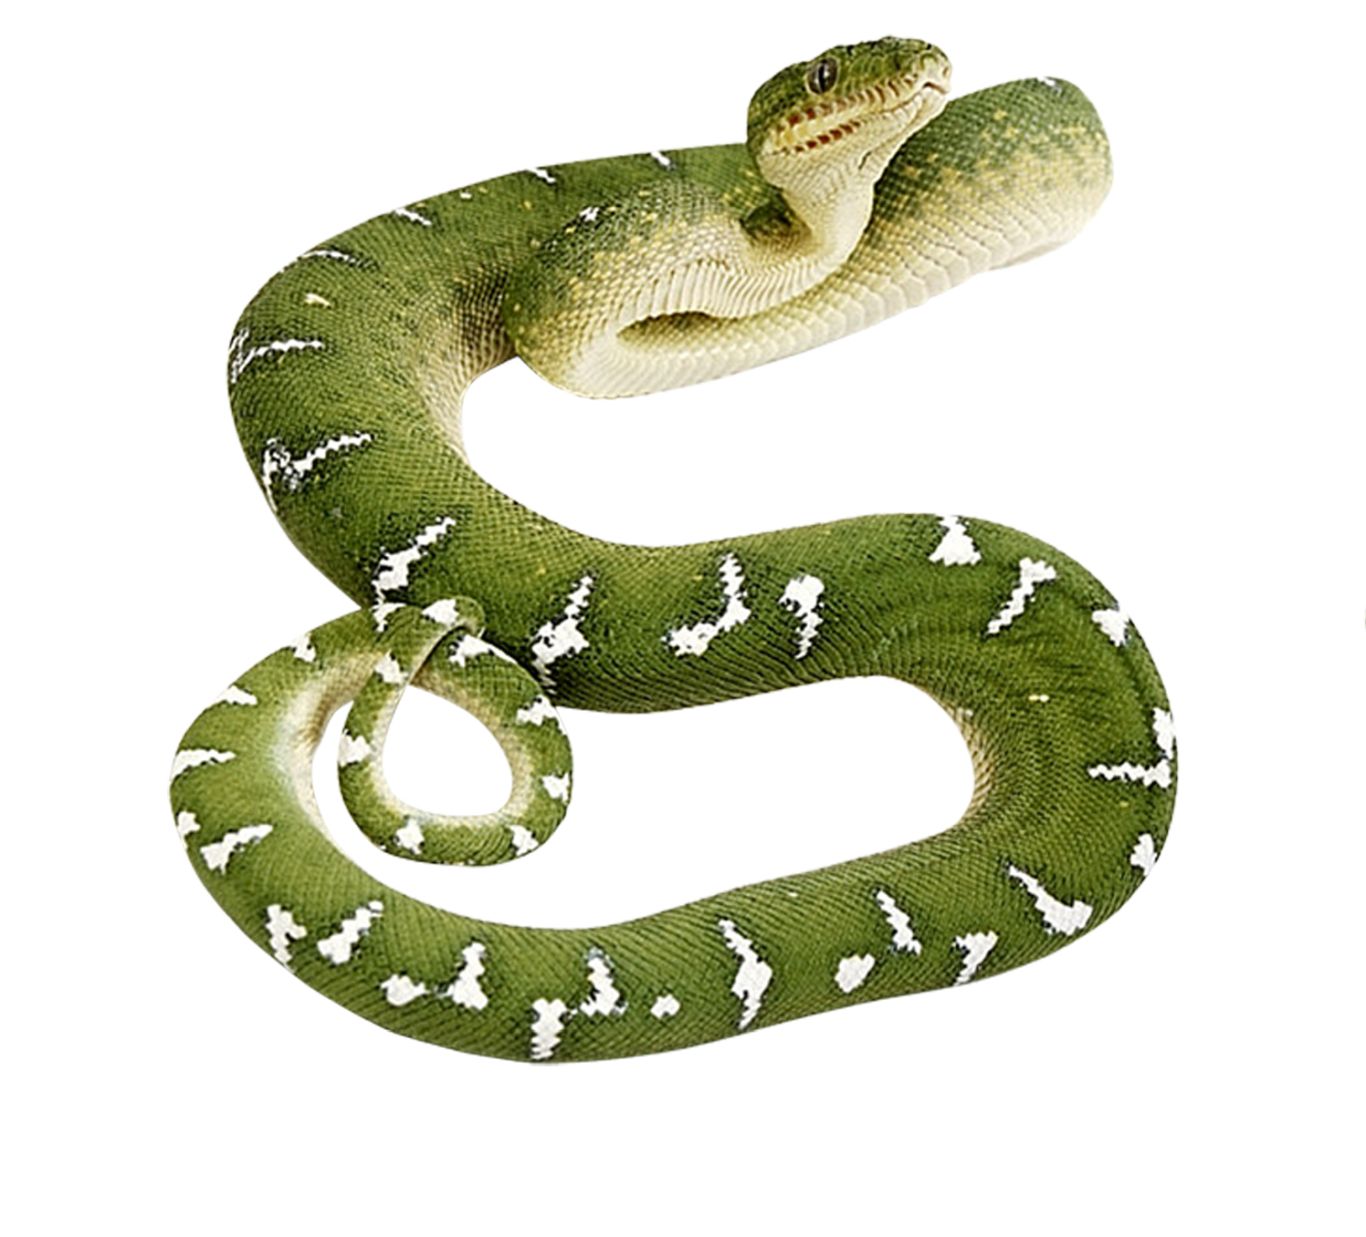 Green snake PNG image    图片编号:4048